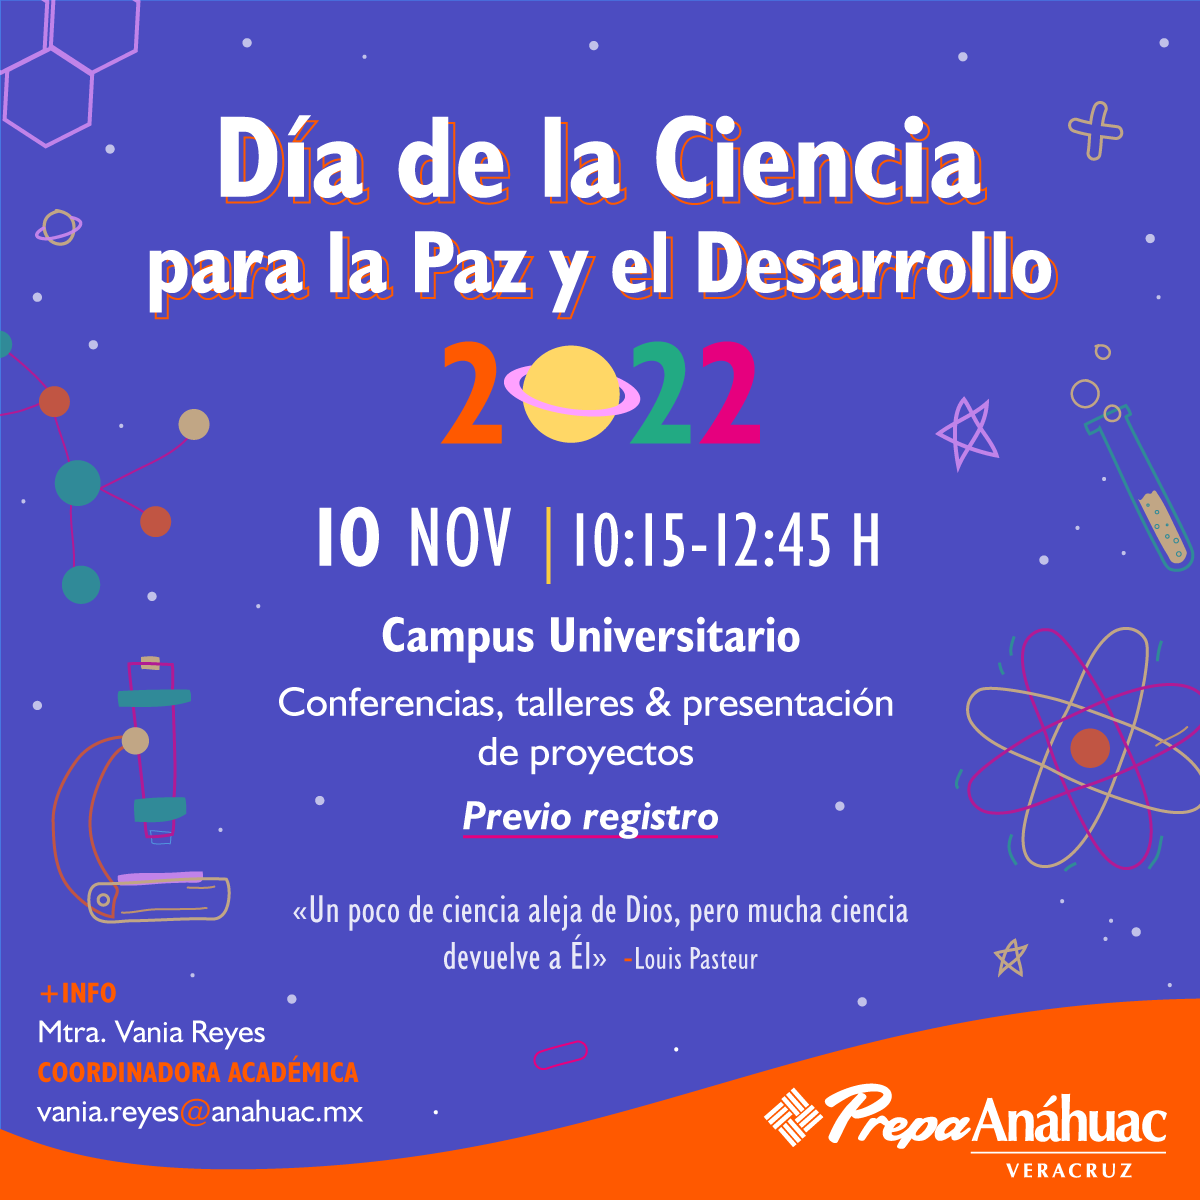 Día de la Ciencia para la Paz y el Desarrollo 2022